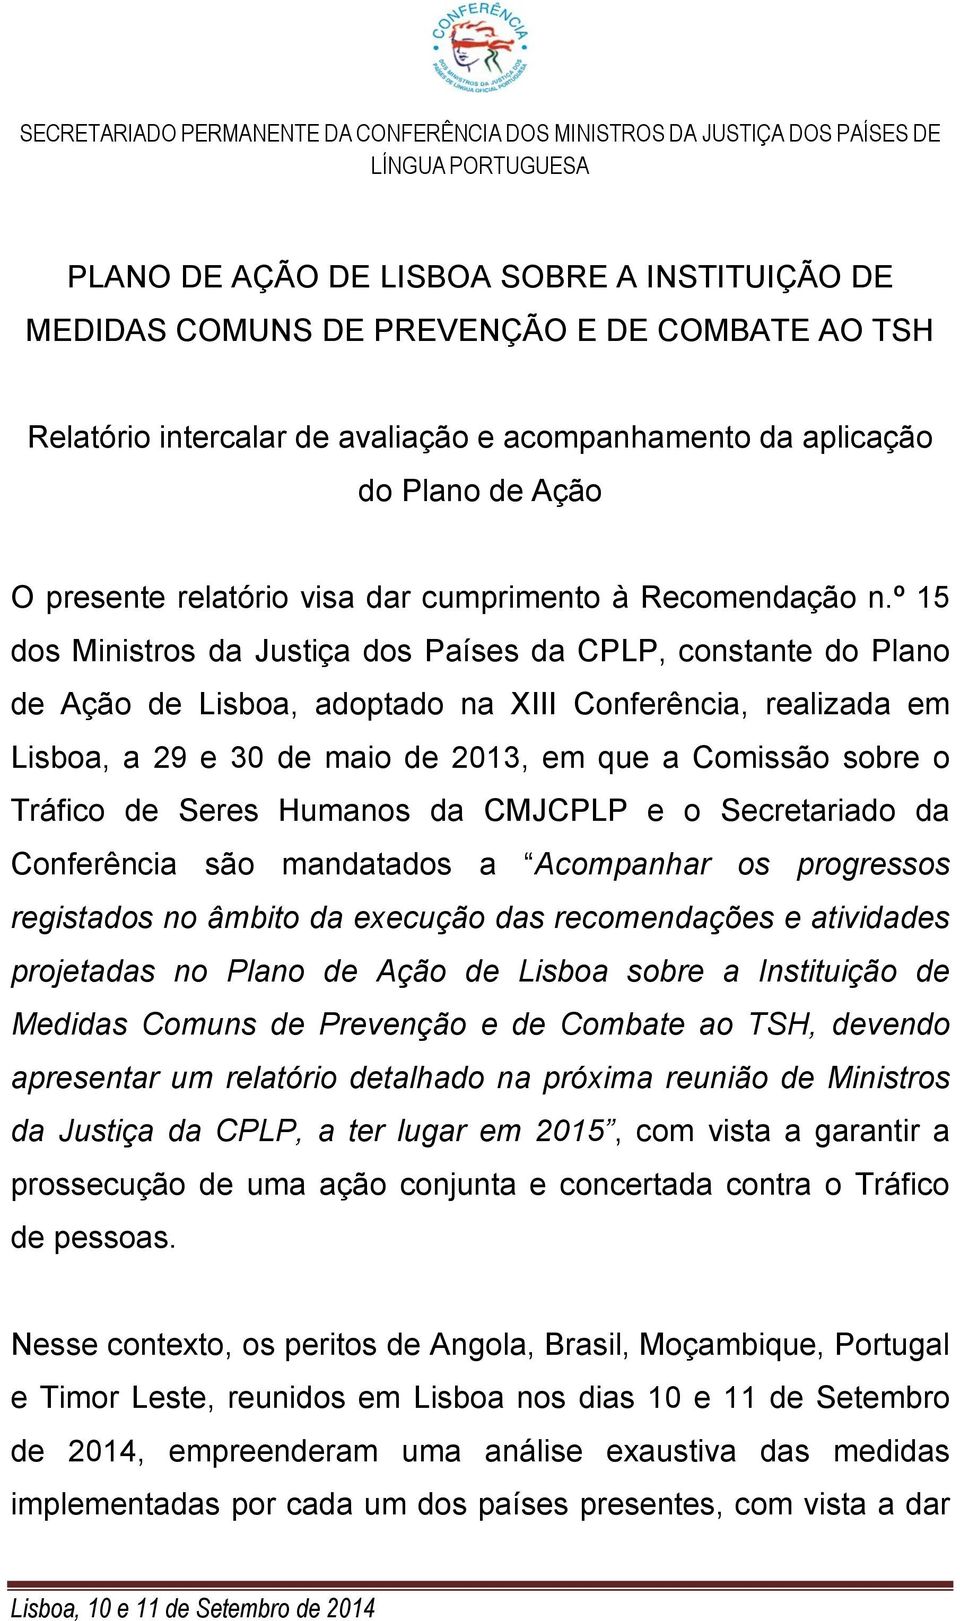 º 15 dos Ministros da Justiça dos Países da CPLP, constante do Plano de Ação de Lisboa, adoptado na XIII Conferência, realizada em Lisboa, a 29 e 30 de maio de 2013, em que a Comissão sobre o Tráfico